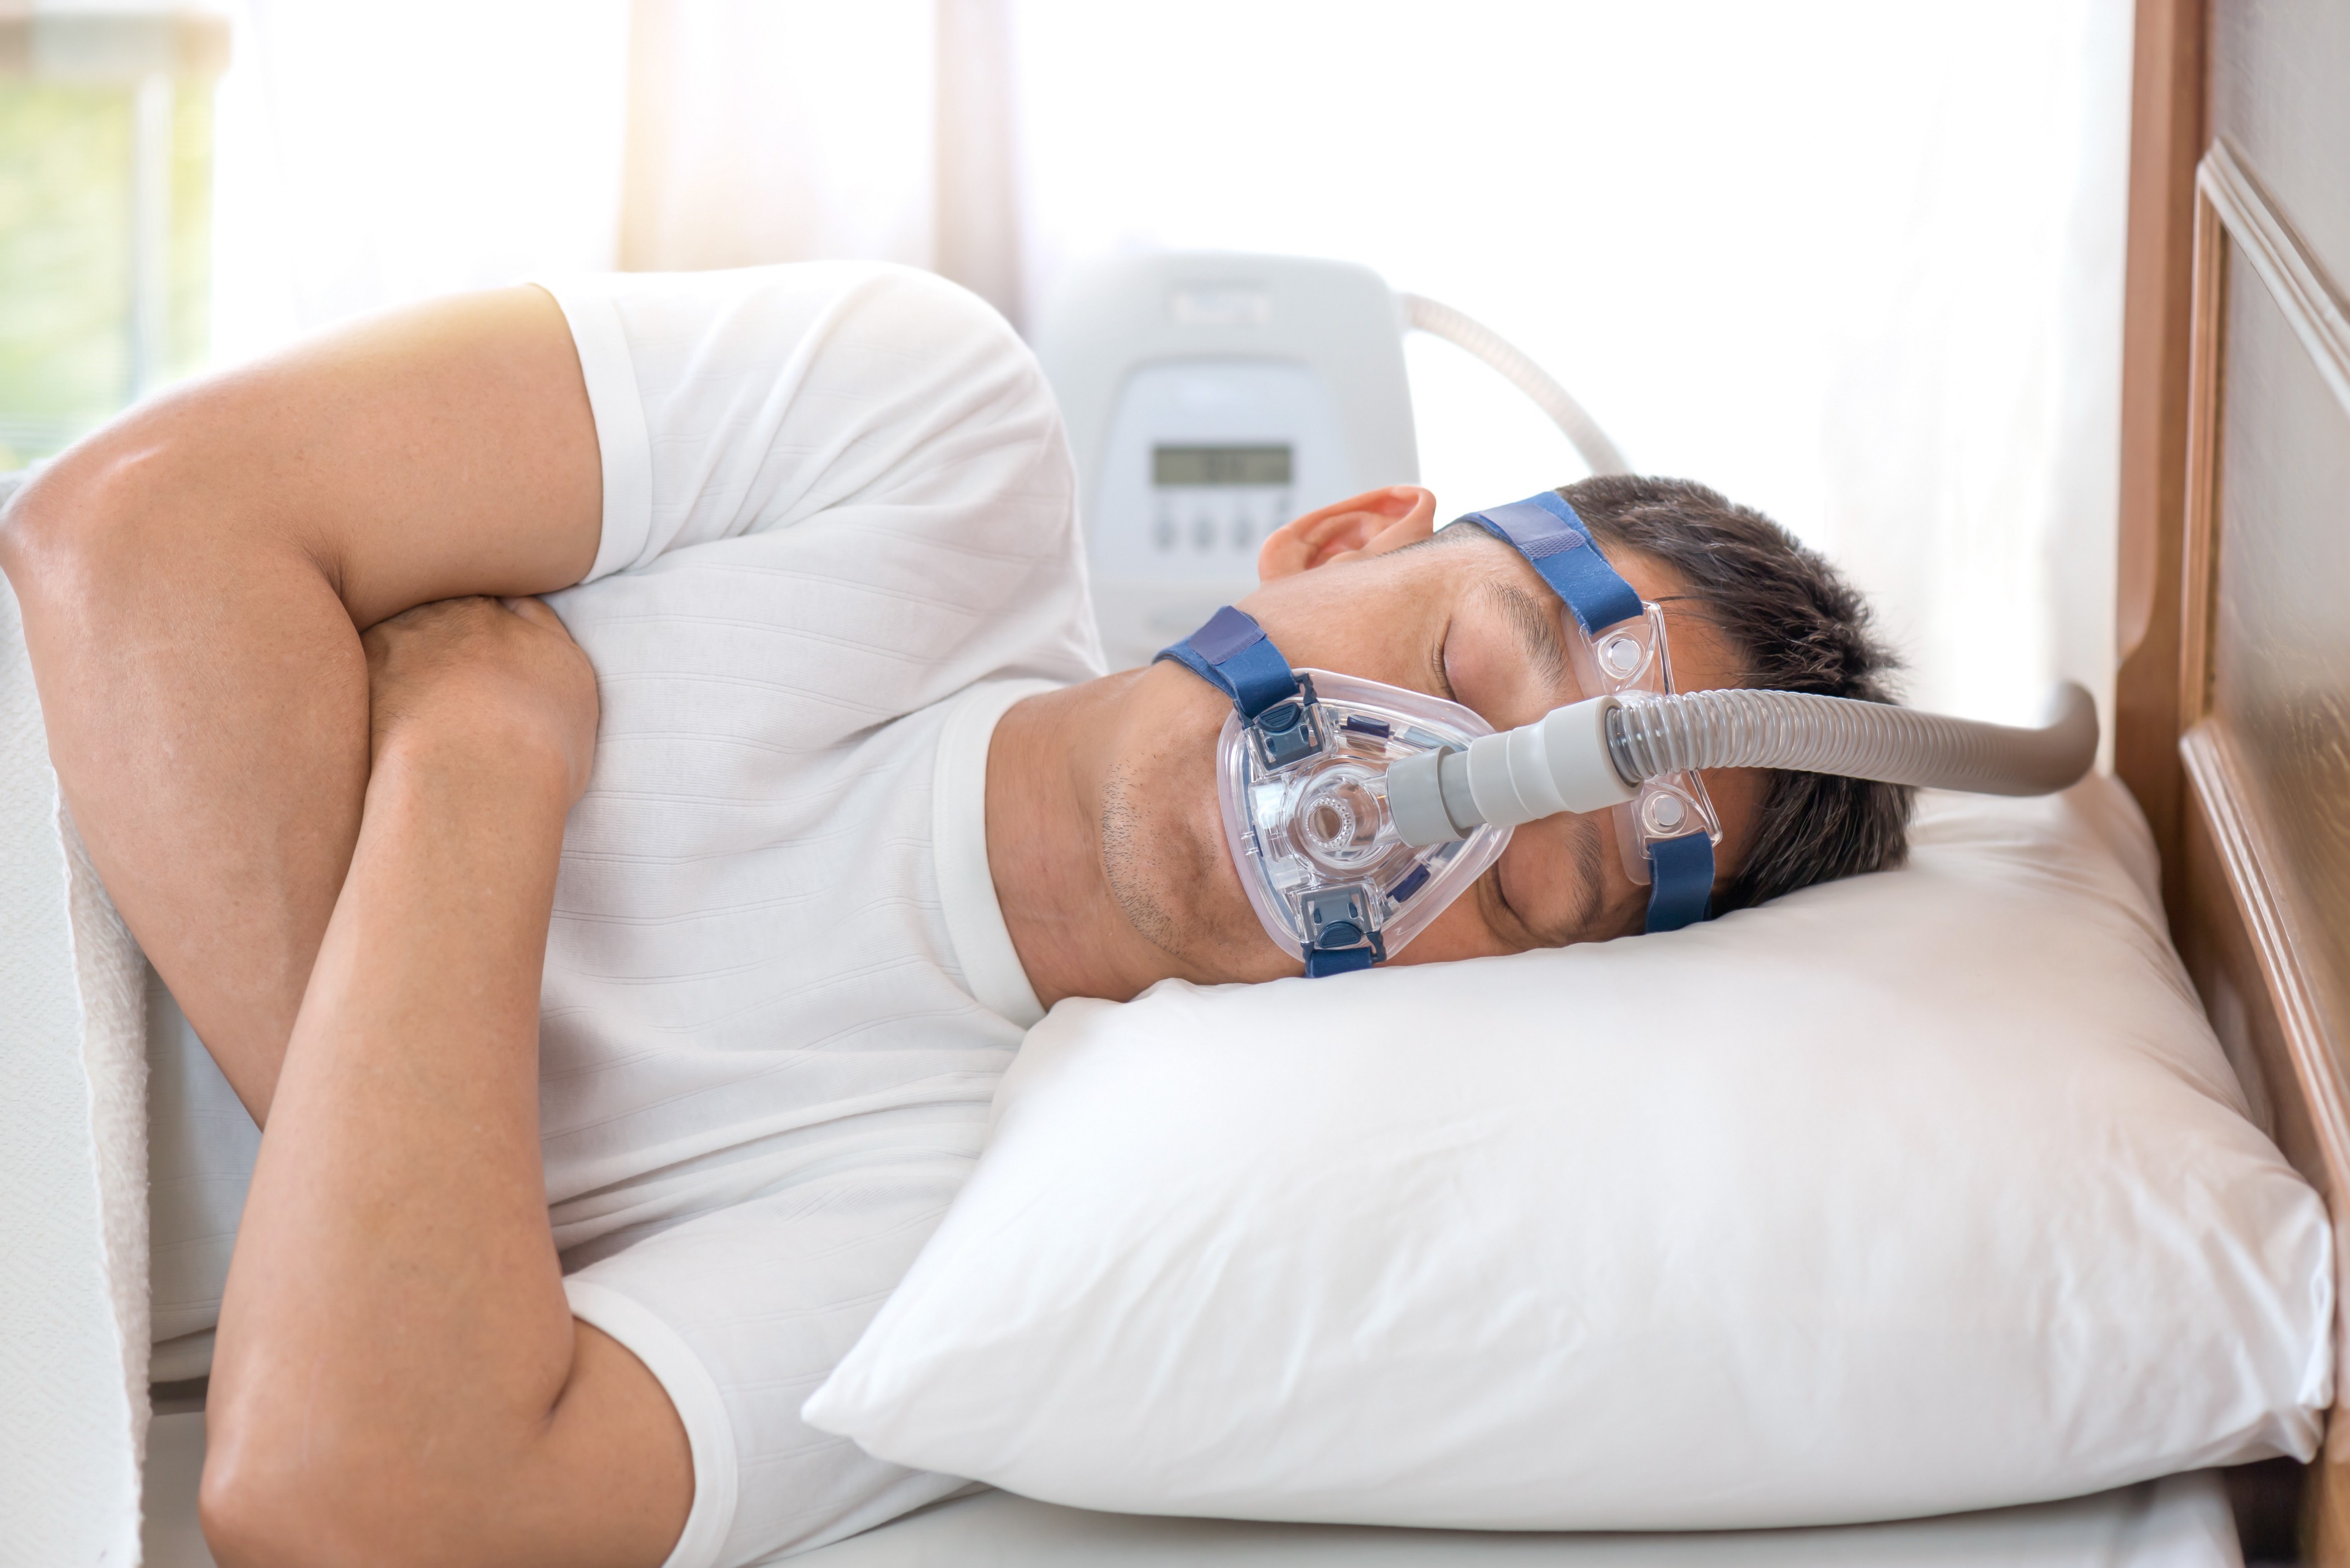 جامعة الملك سعود : لا إثبات علمي بأن مرضى انقطاع التنفس أثناء النوم هم الأكثر عرضة للإصابة بكورونا   صحيفة الاقتصادية